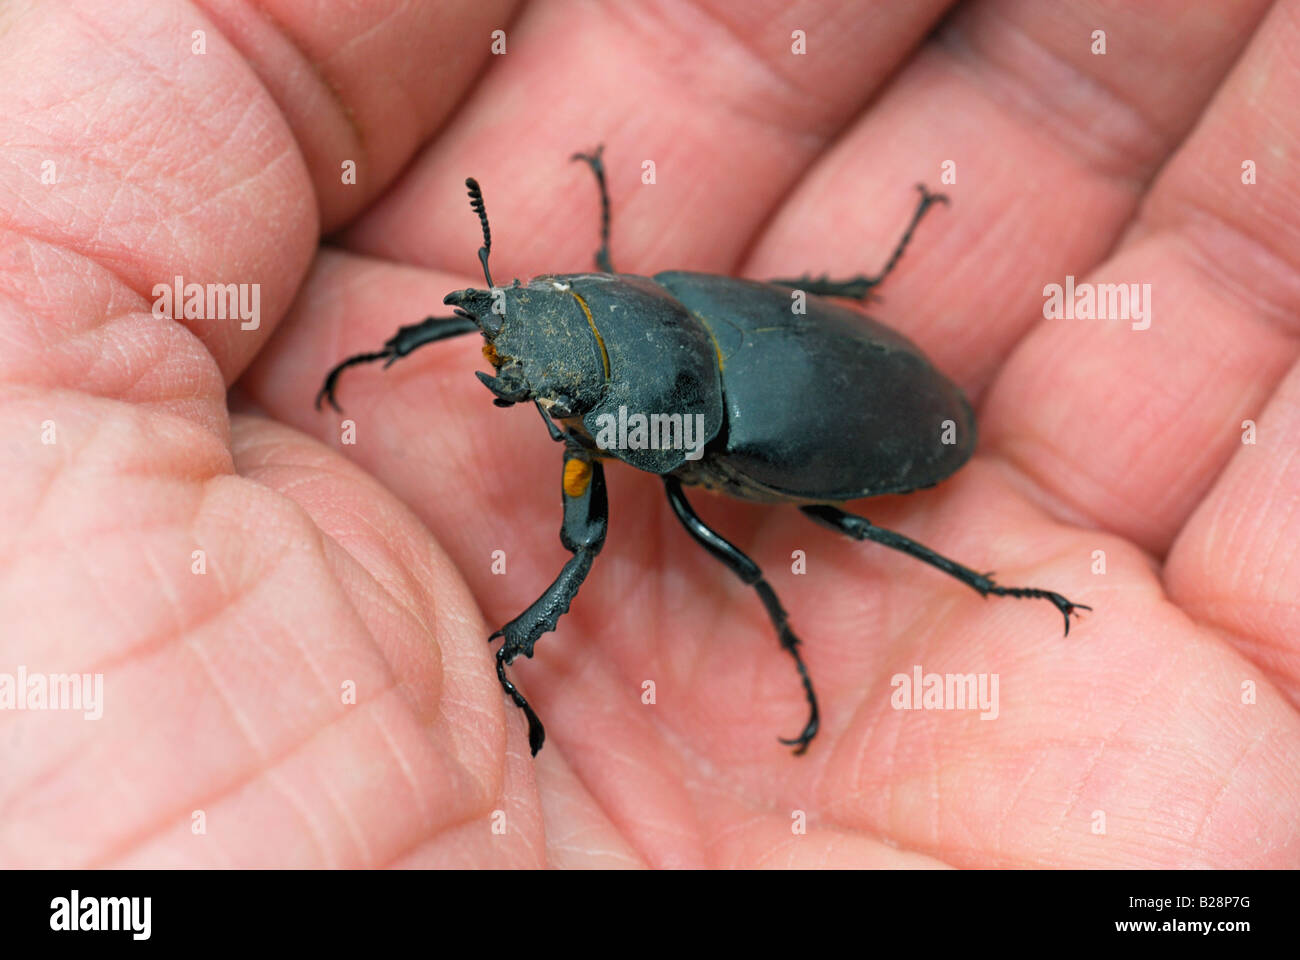 Stag beetle assis dans une personnes hand Banque D'Images